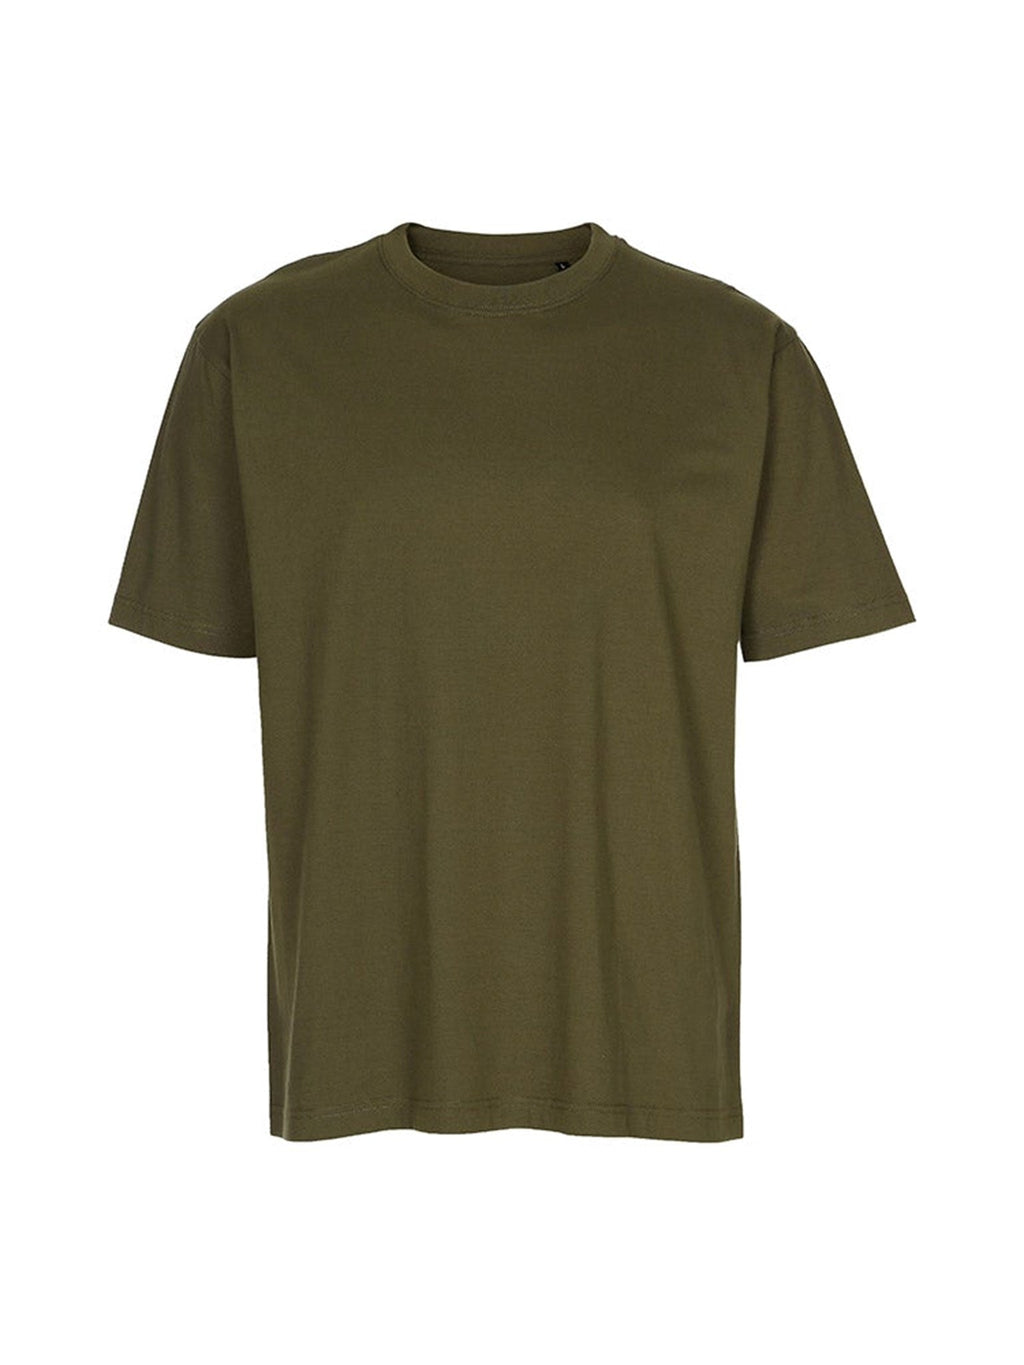 Negabaritiniai marškinėliai - armija žalia